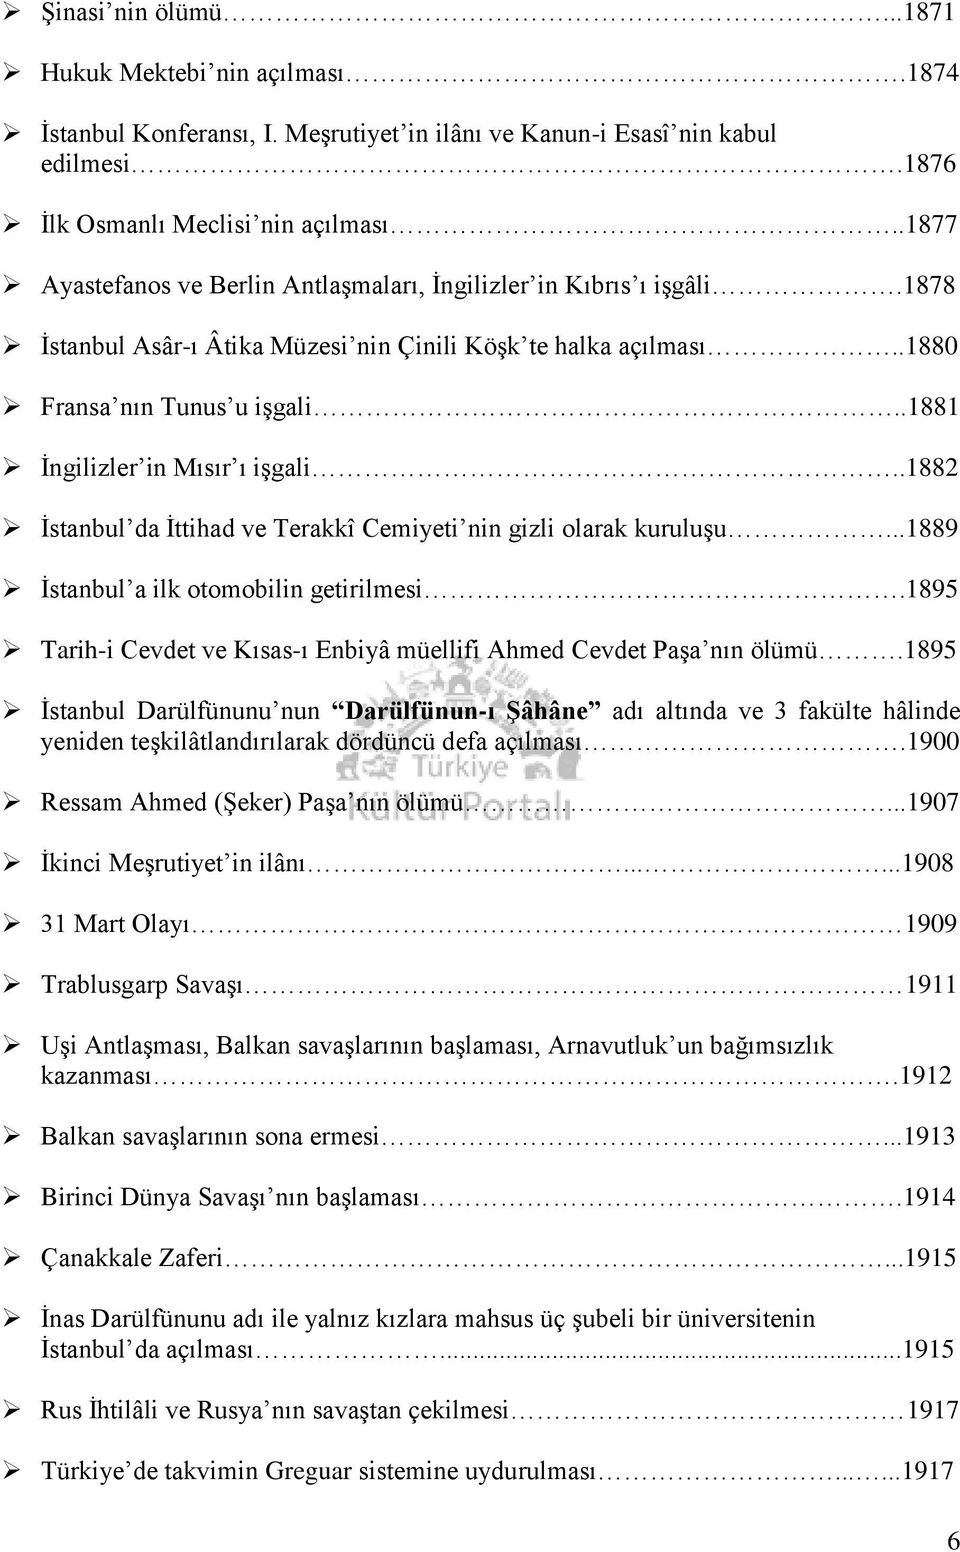 .1881 İngilizler in Mısır ı işgali..1882 İstanbul da İttihad ve Terakkî Cemiyeti nin gizli olarak kuruluşu...1889 İstanbul a ilk otomobilin getirilmesi.